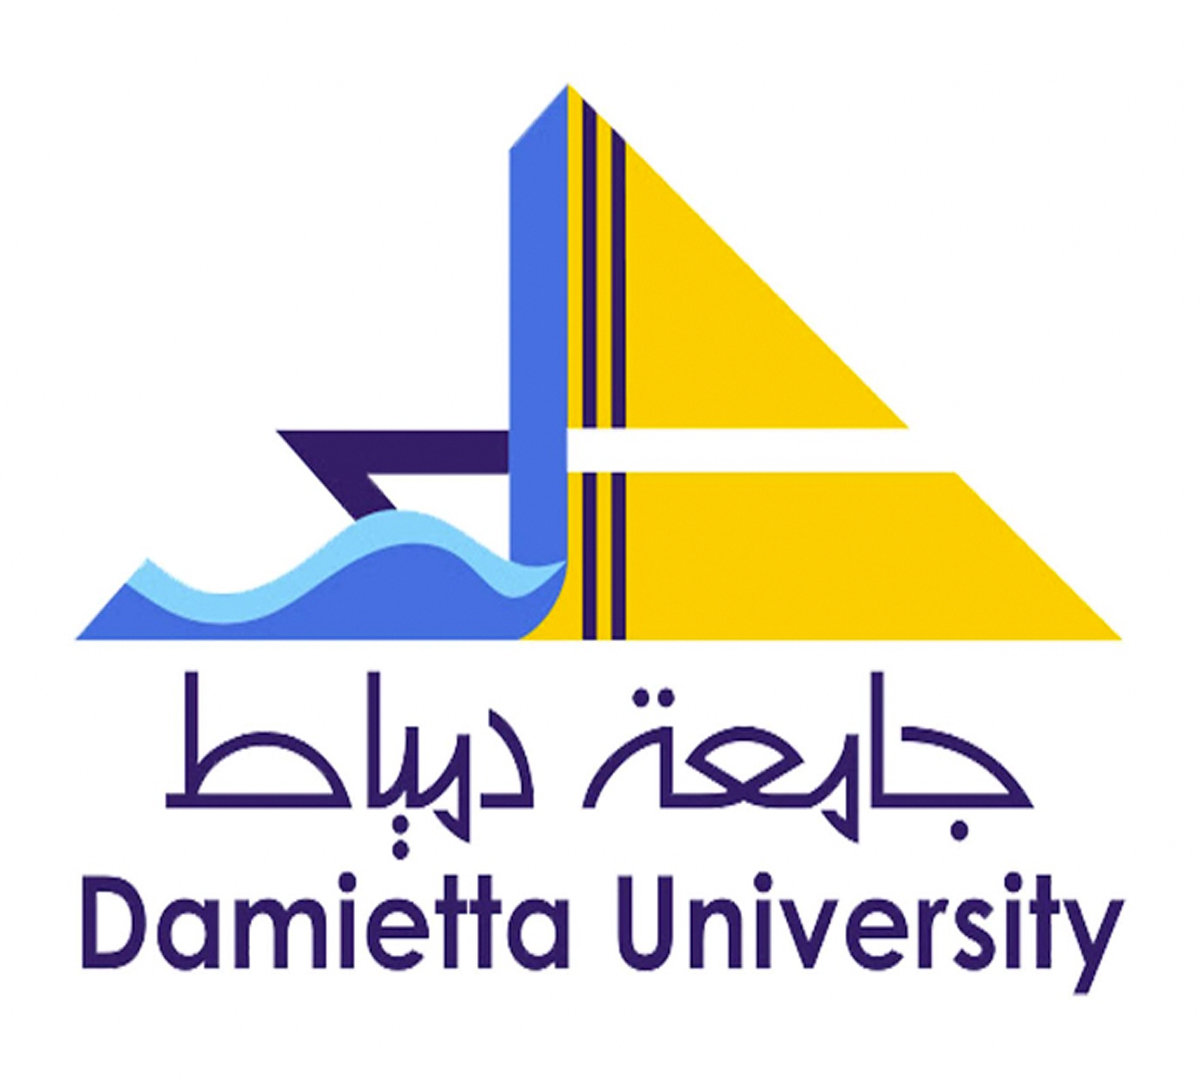 damietta university